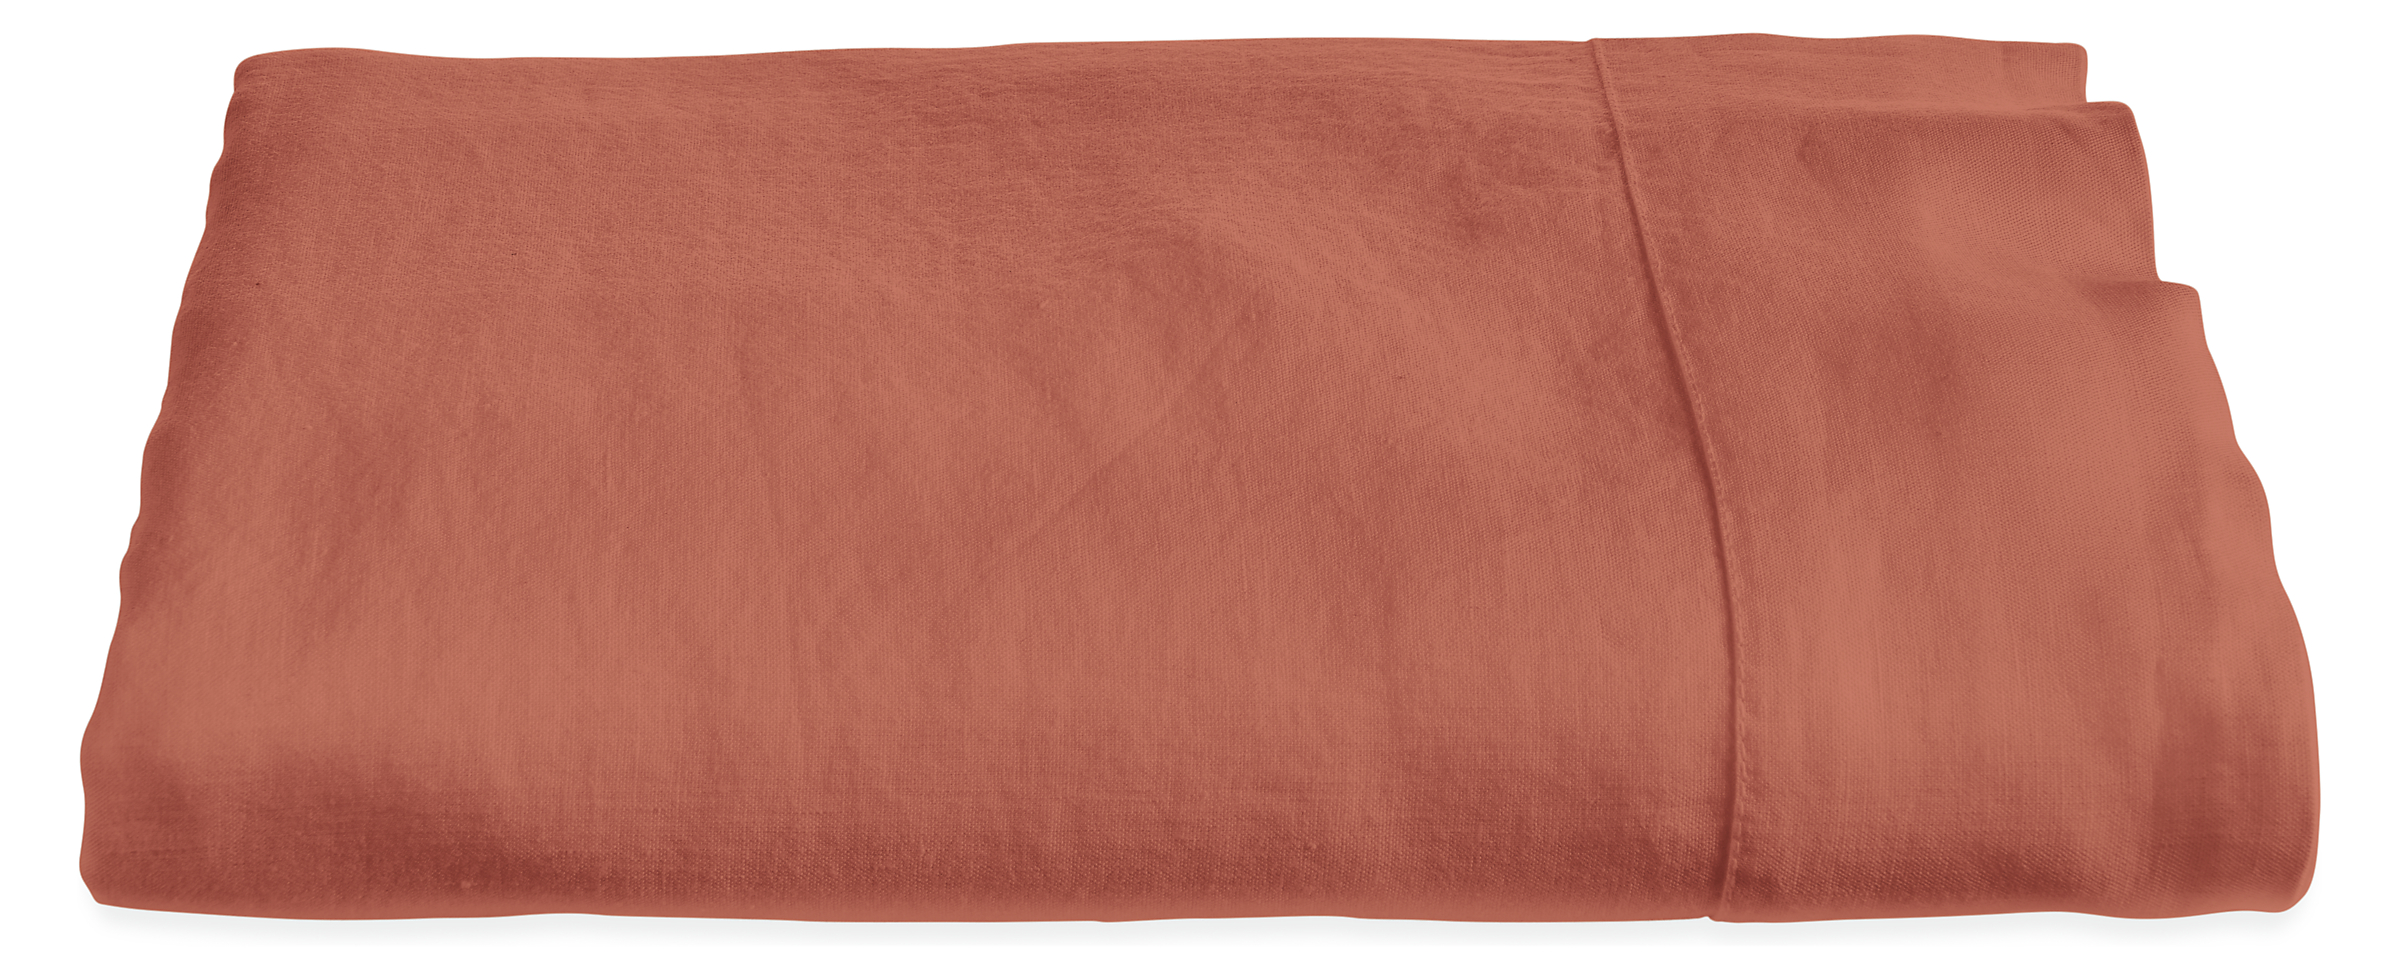 Relaxed Linen Queen Flat Sheet